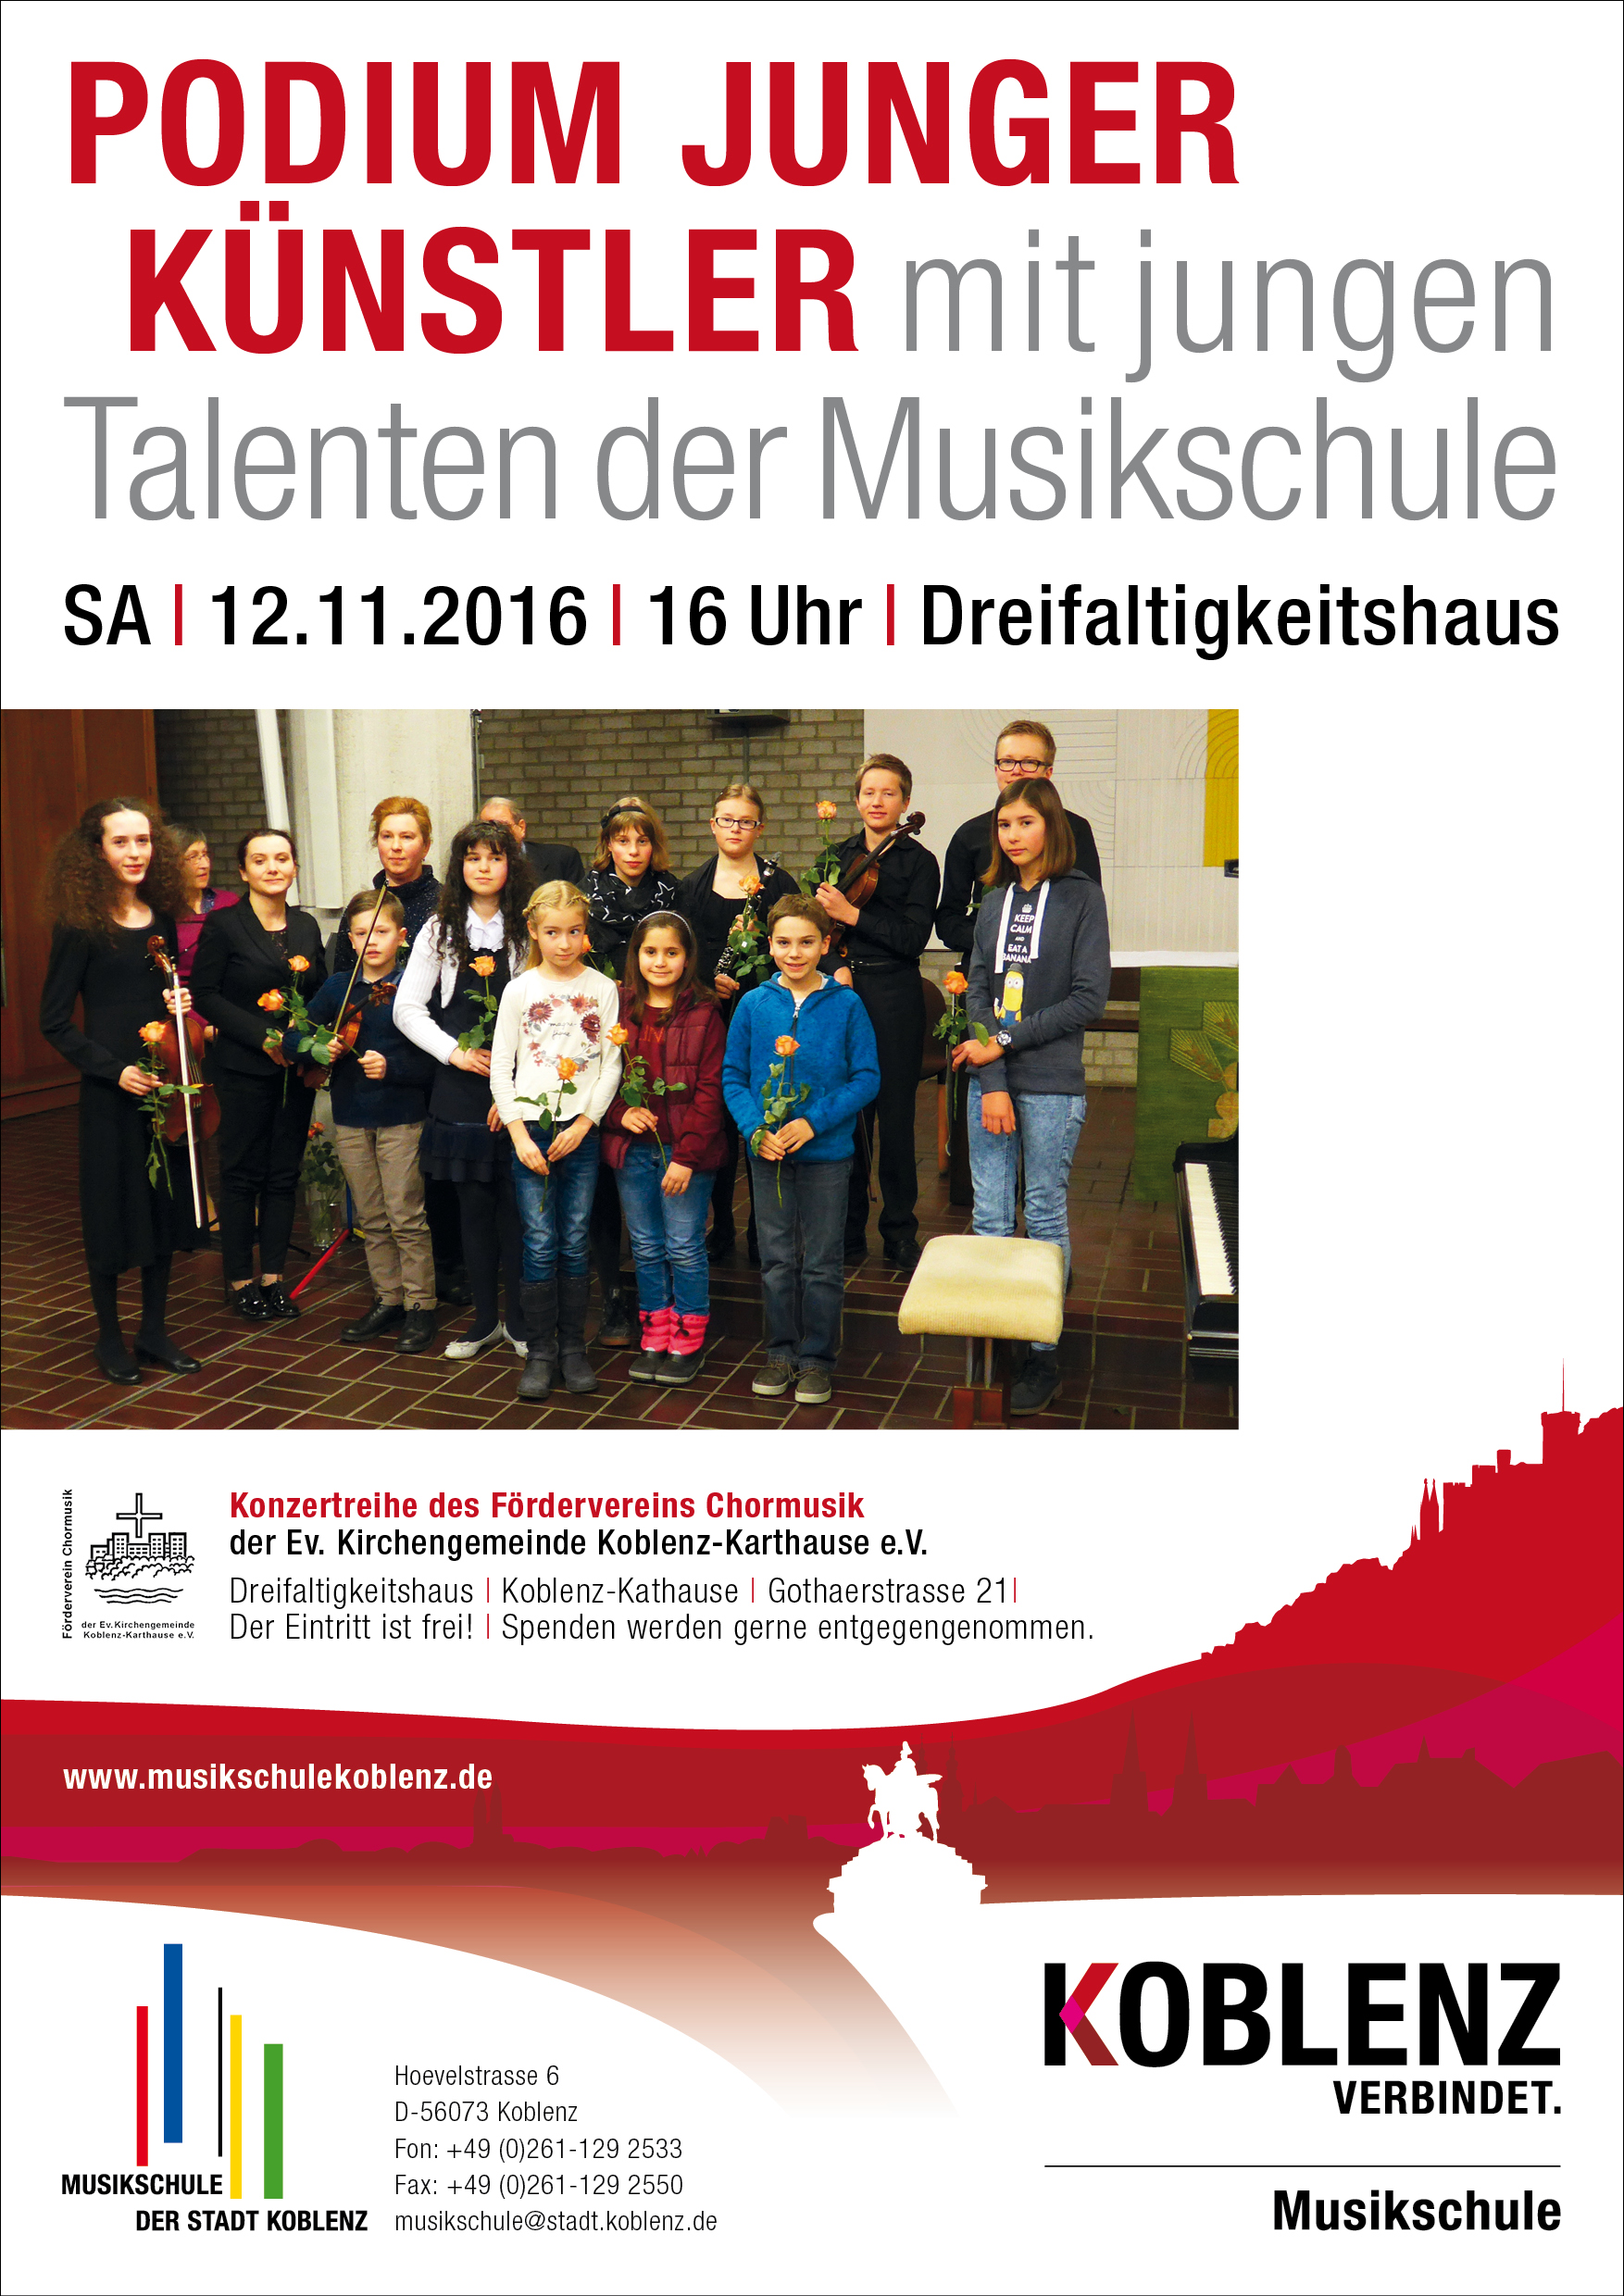 plakat musikschule podium junger künstler 2016